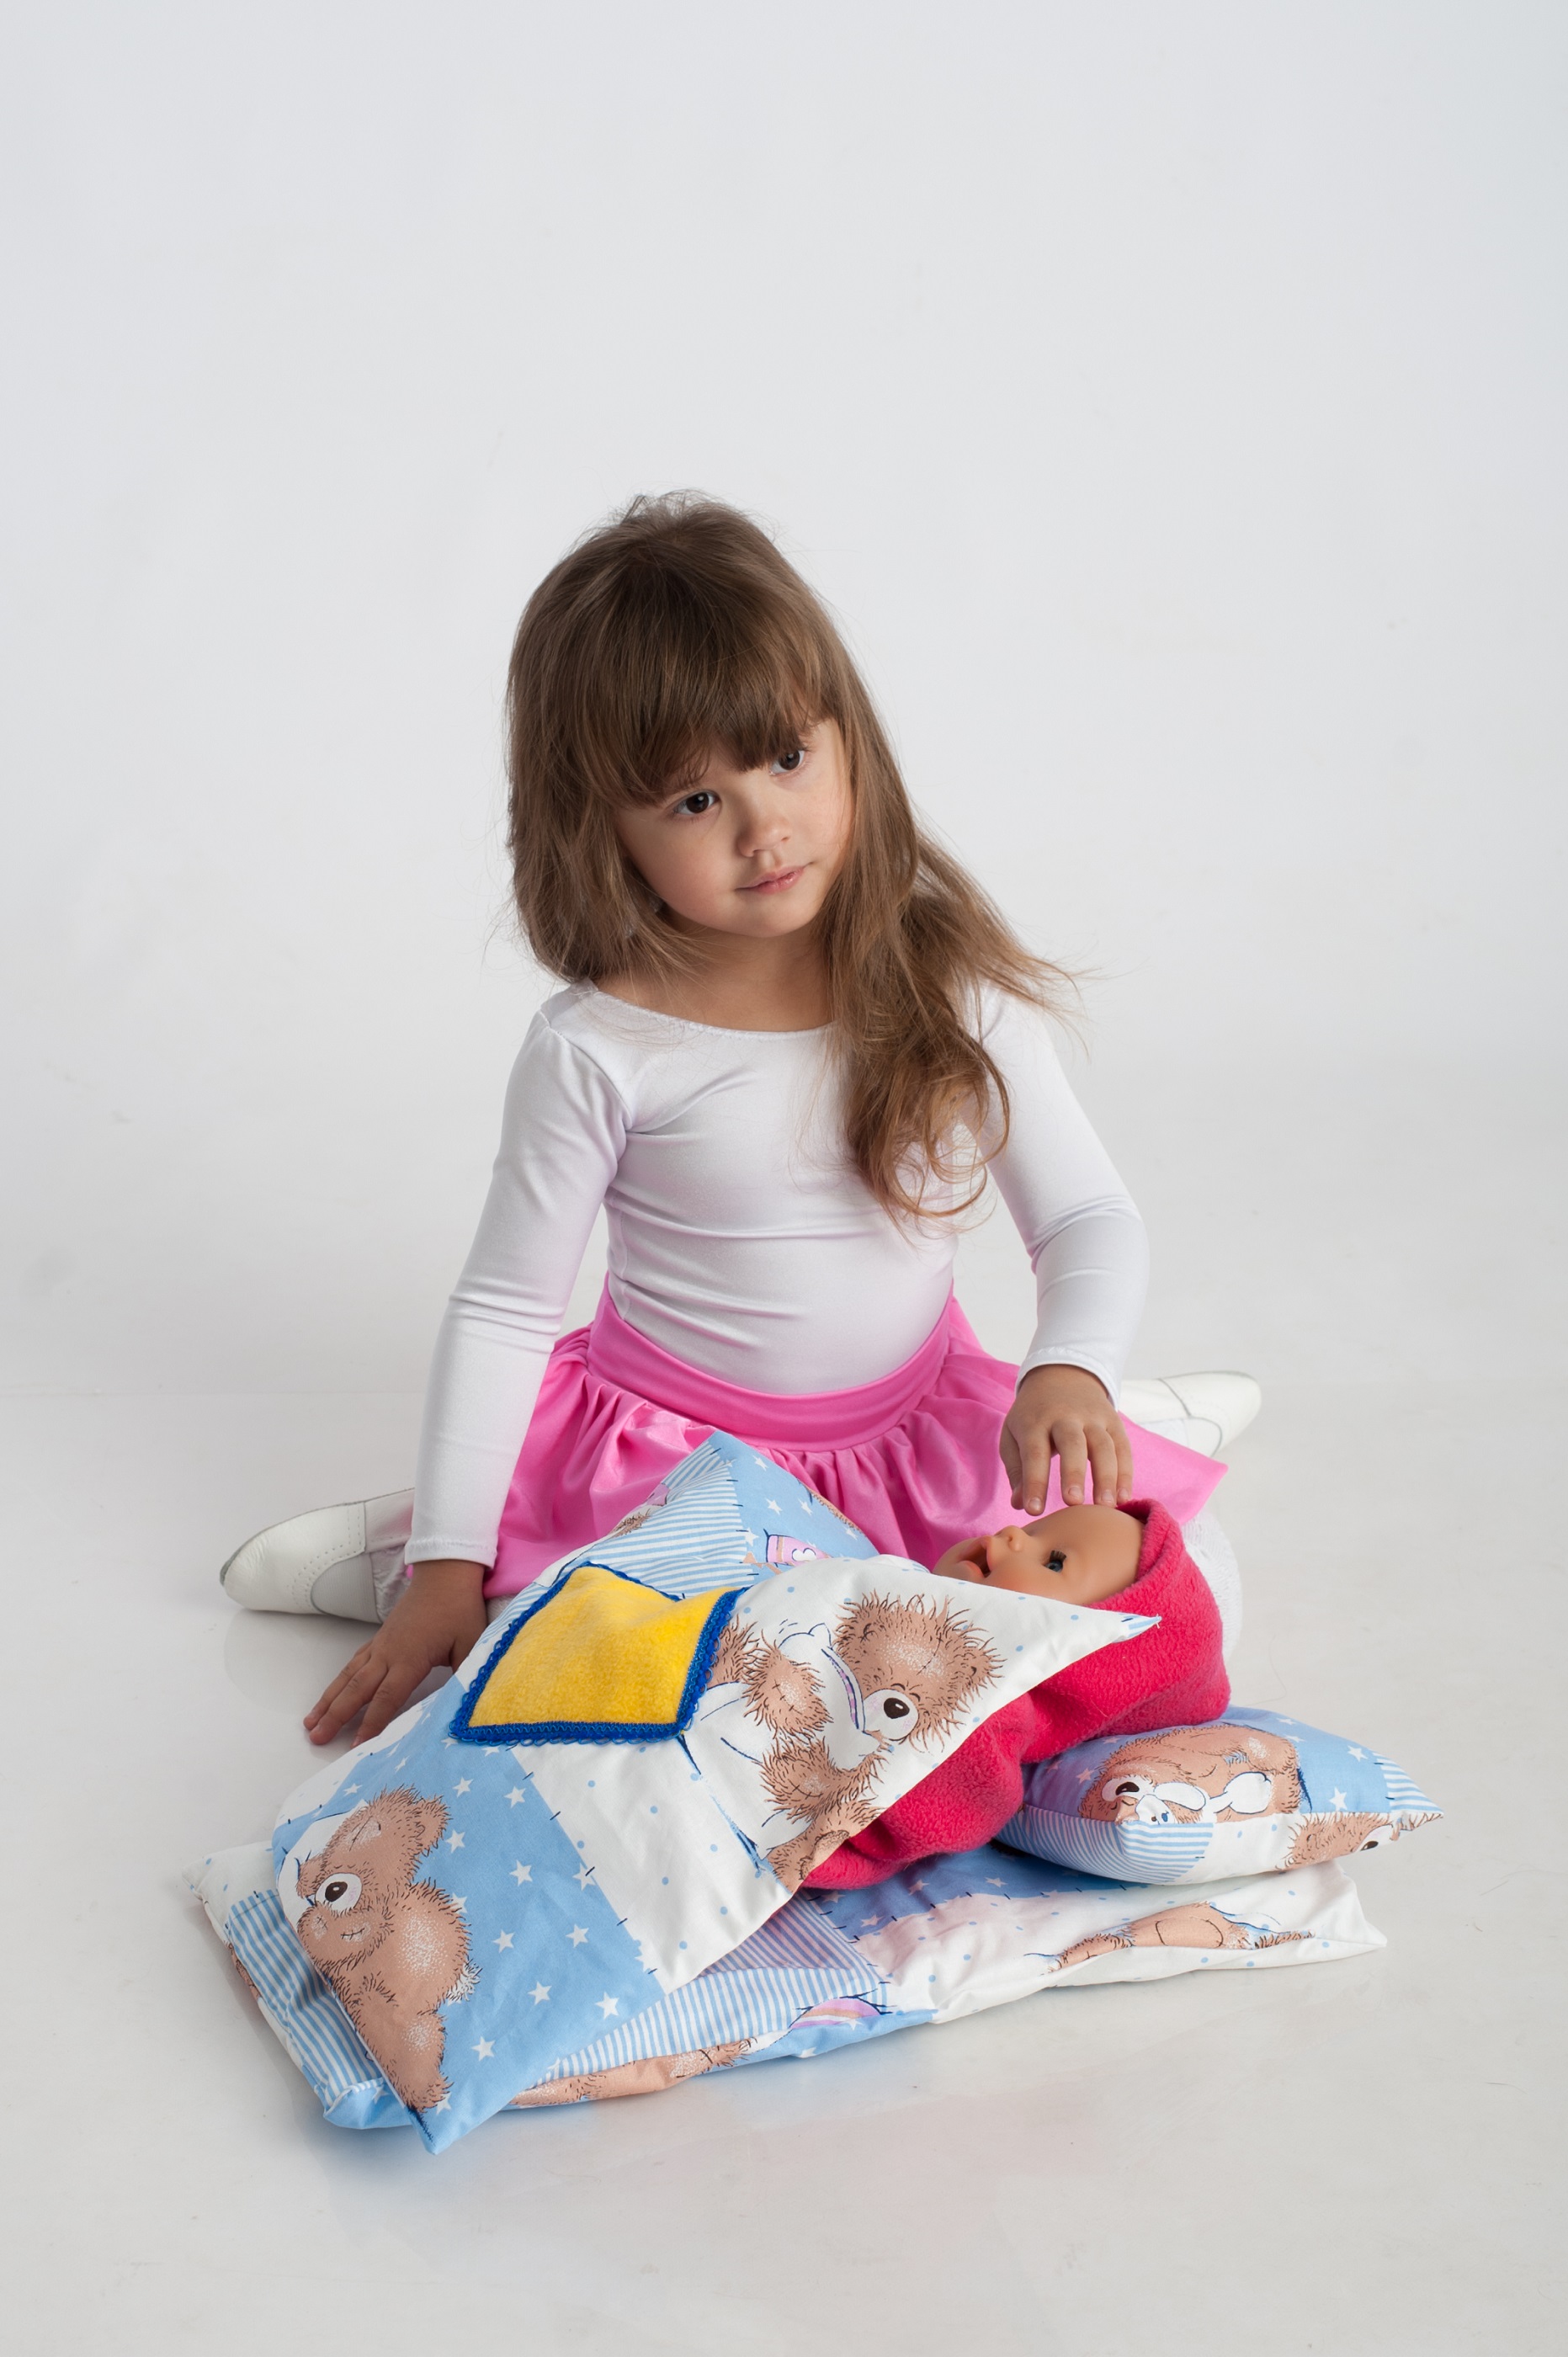 Комплект постельного белья для кроватки 2 из ткани с детским рисунком